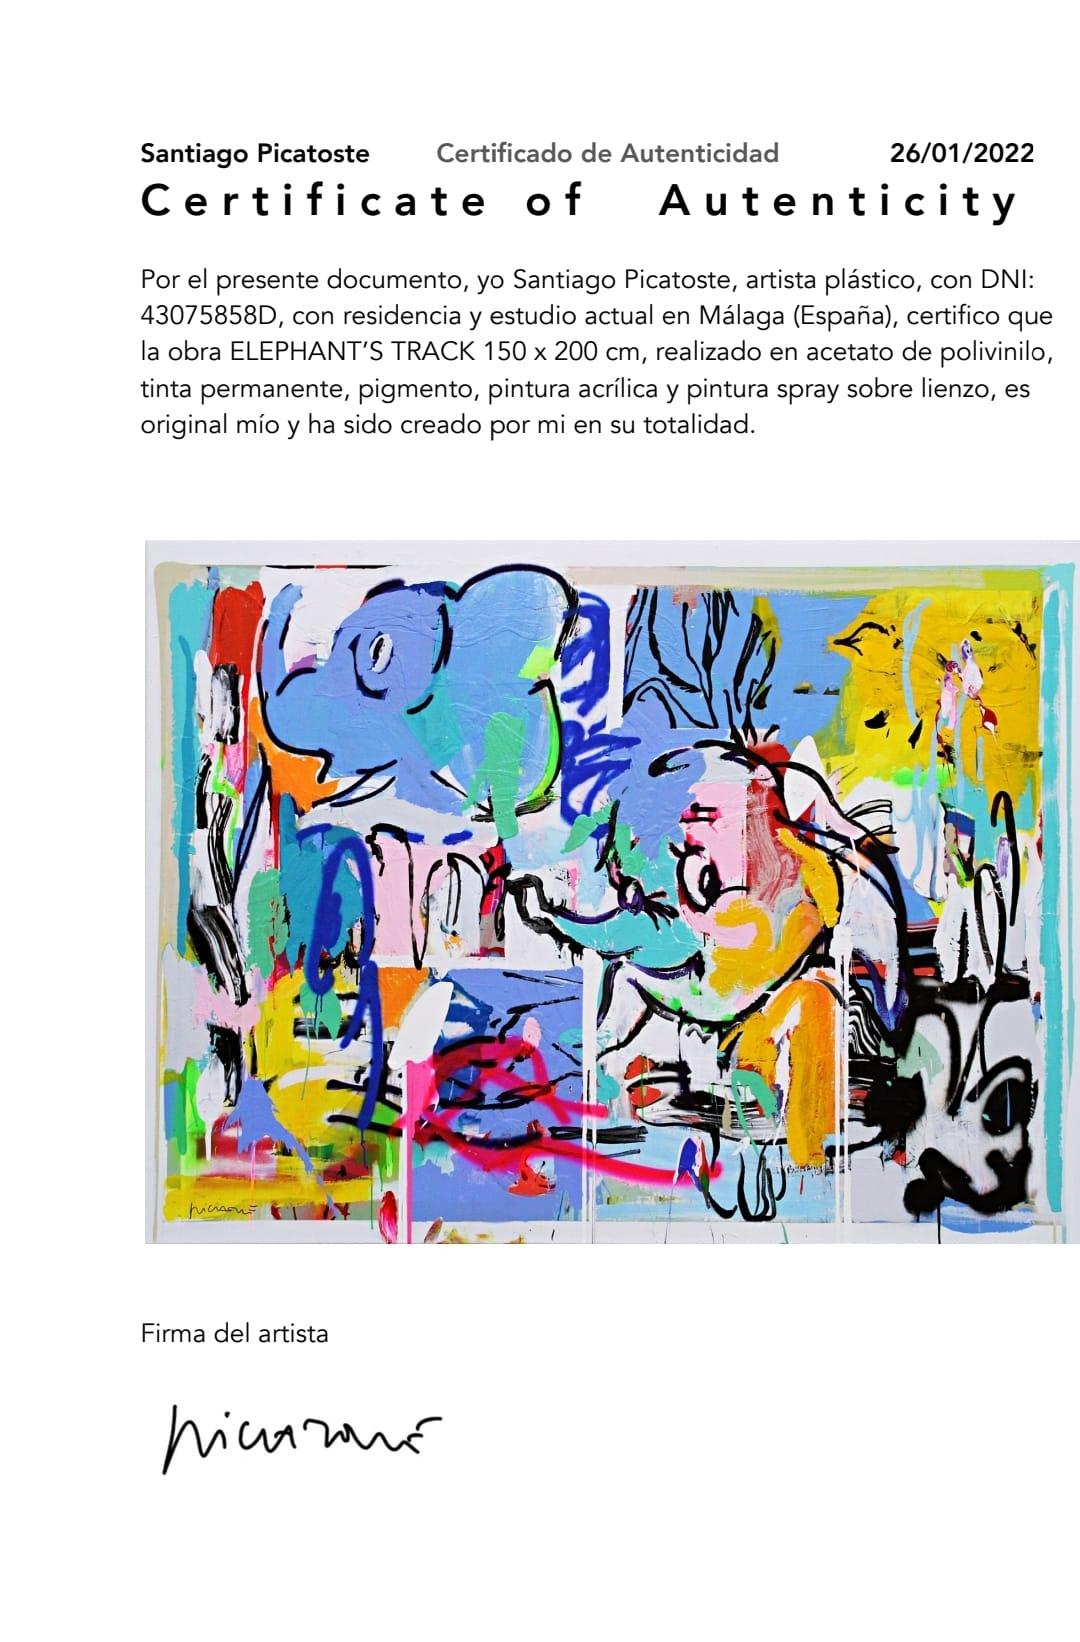 Begehrtes zeitgenössisches Kunstwerk von Santiago Picatoste.

Das Werk elephant's track 150 x 200 cm, hergestellt aus Polyvinylacetat, permanenter Tinte, Pigment, Acrylfarbe und Sprühfarbe auf Leinwand.

Es wird mit seinem Echtheitszertifikat